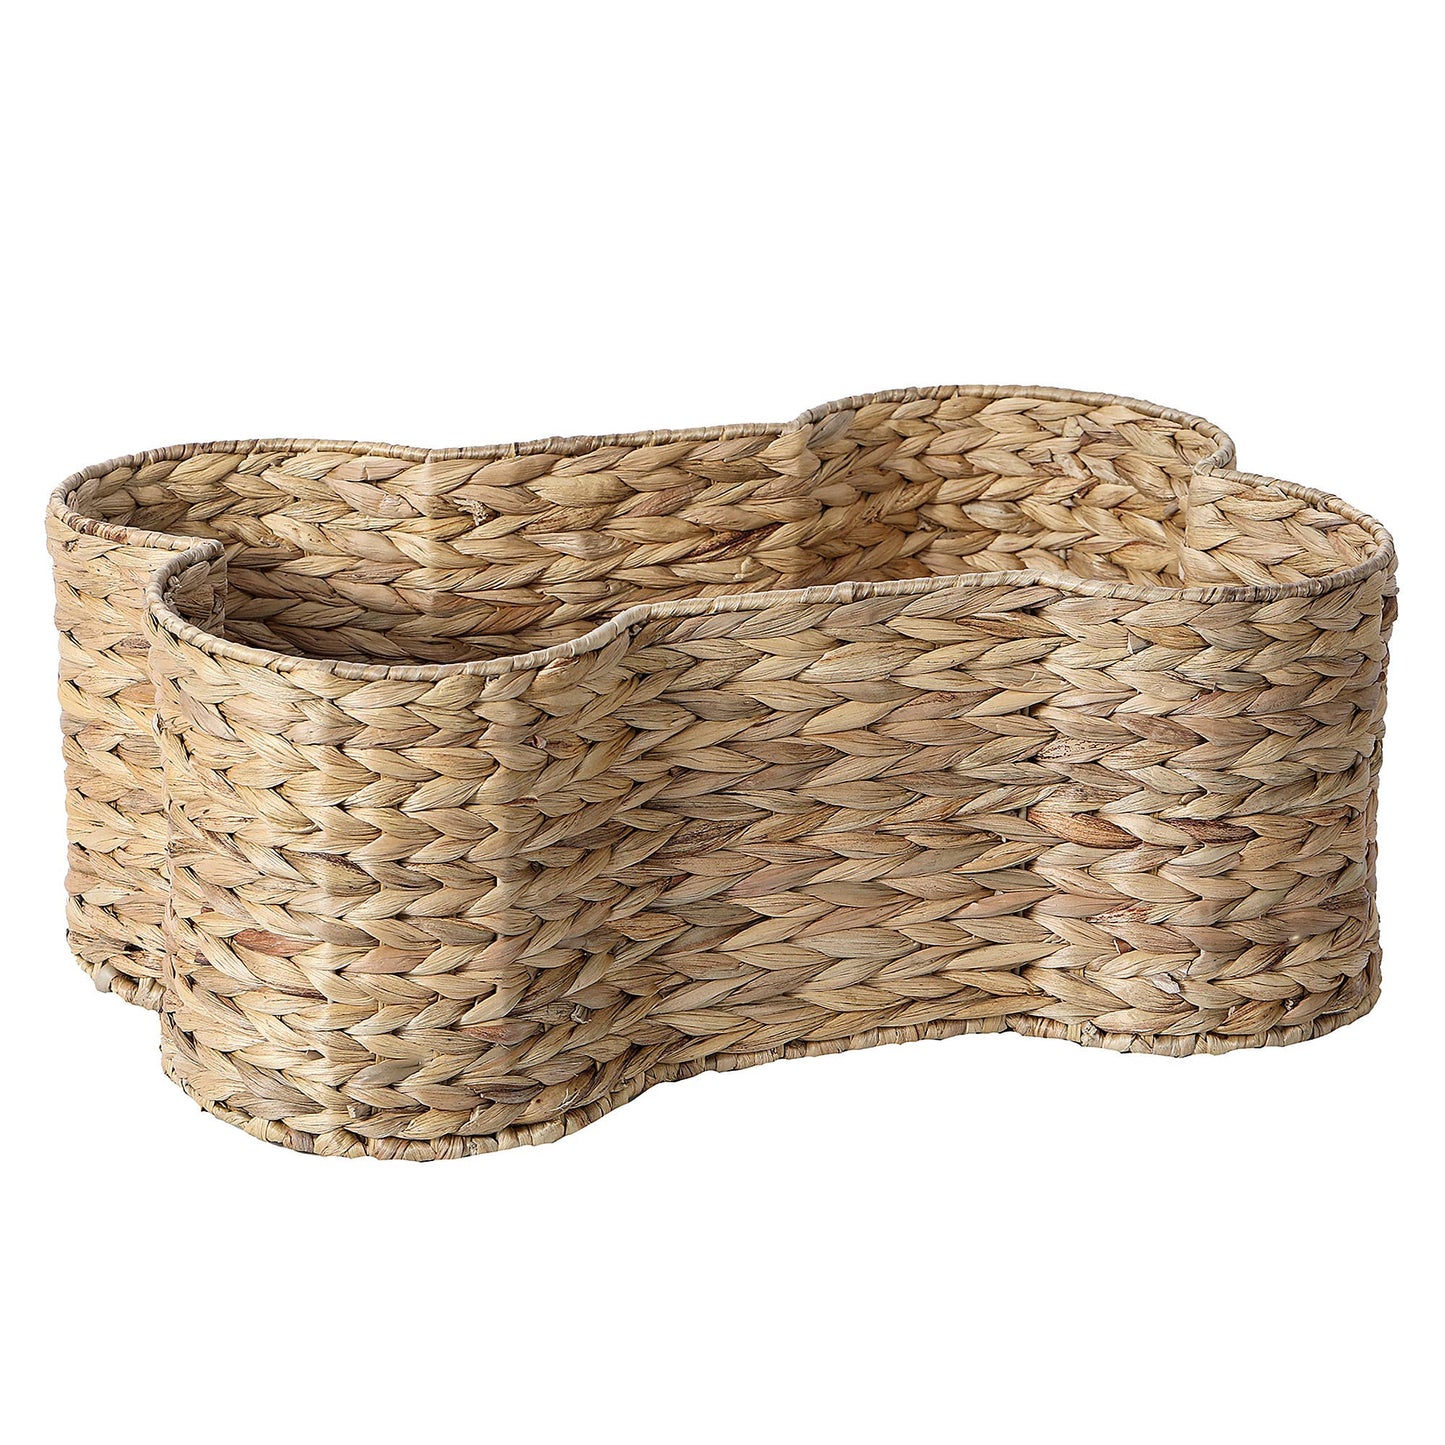 Loxley Pet Storage Basket: Medium / Brown